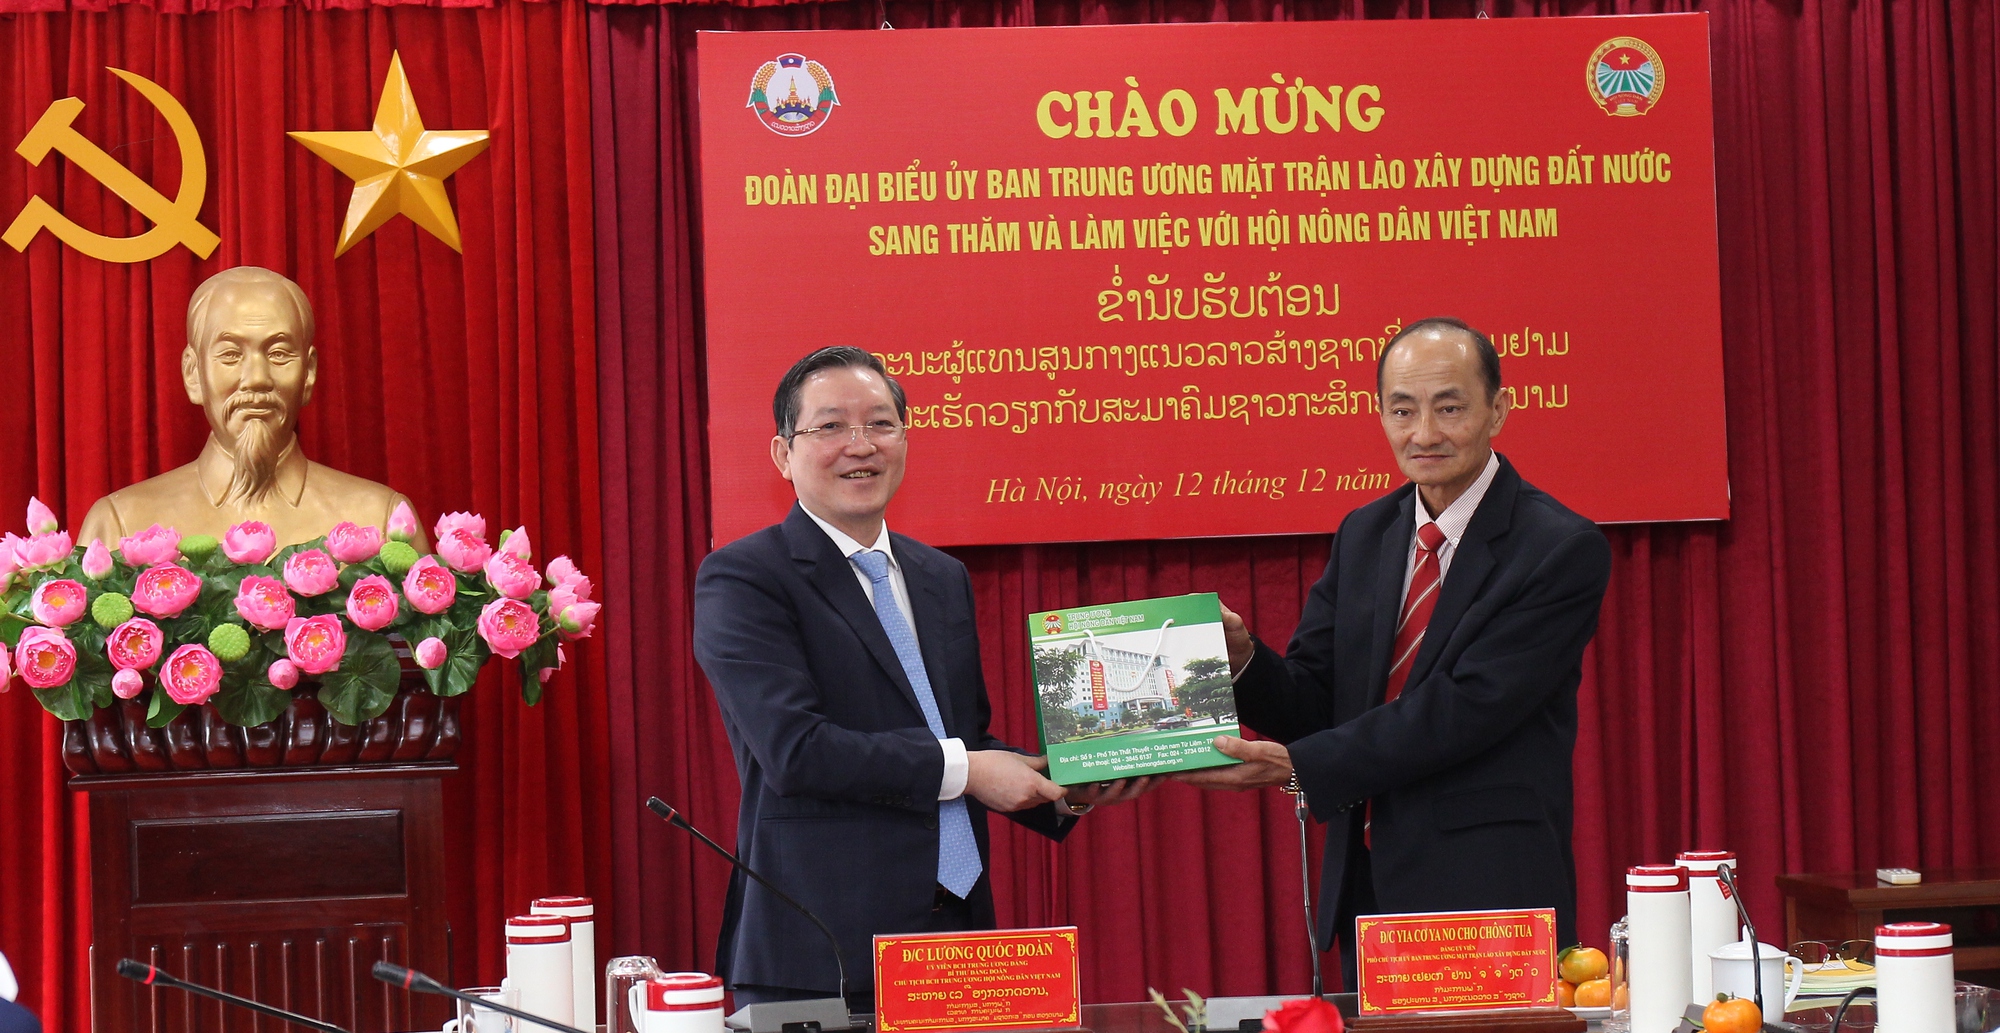 Chủ tịch Hội NDVN Lương Quốc Đoàn trao đổi kinh nghiệm công tác Hội với Trung ương Mặt trận Lào xây dựng đất nước - Ảnh 3.